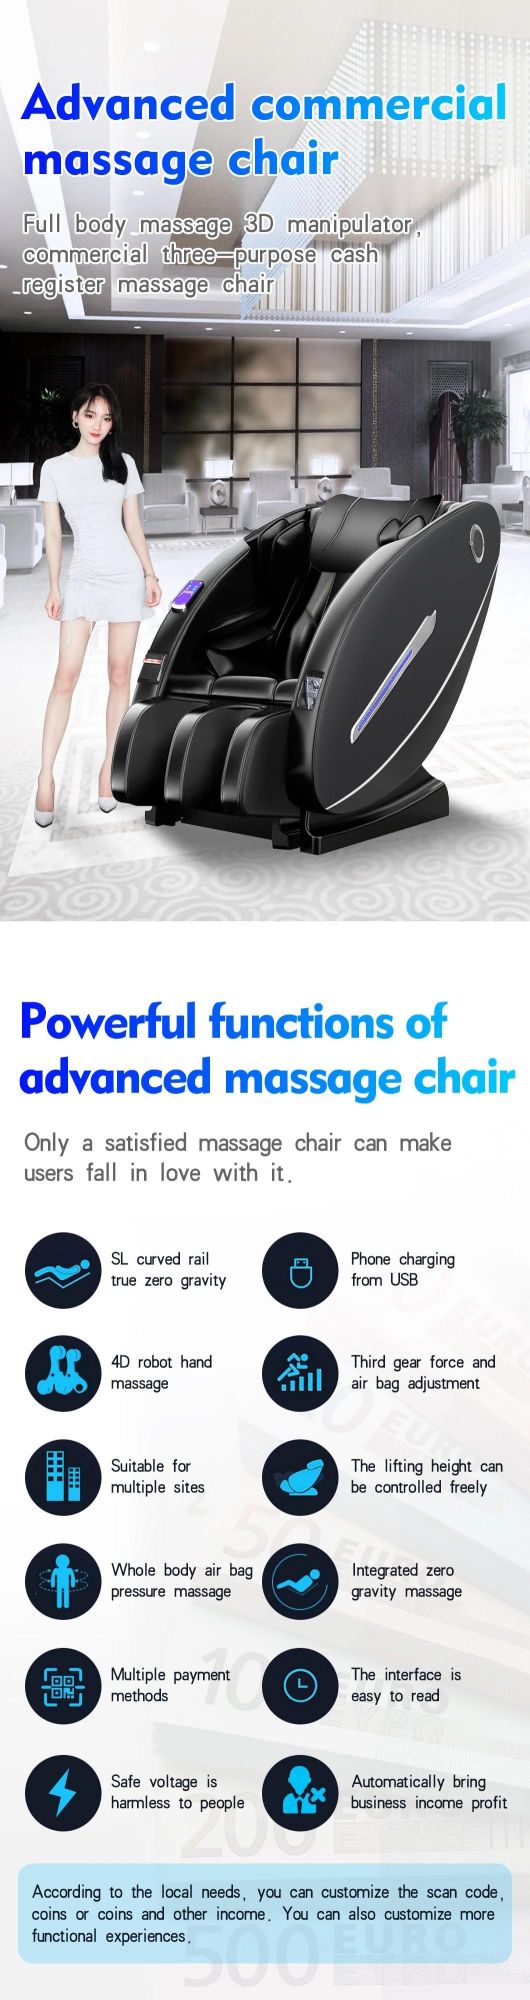 Best Commercial Public Paper Money Acceptor Zero Gravity Massage Chair